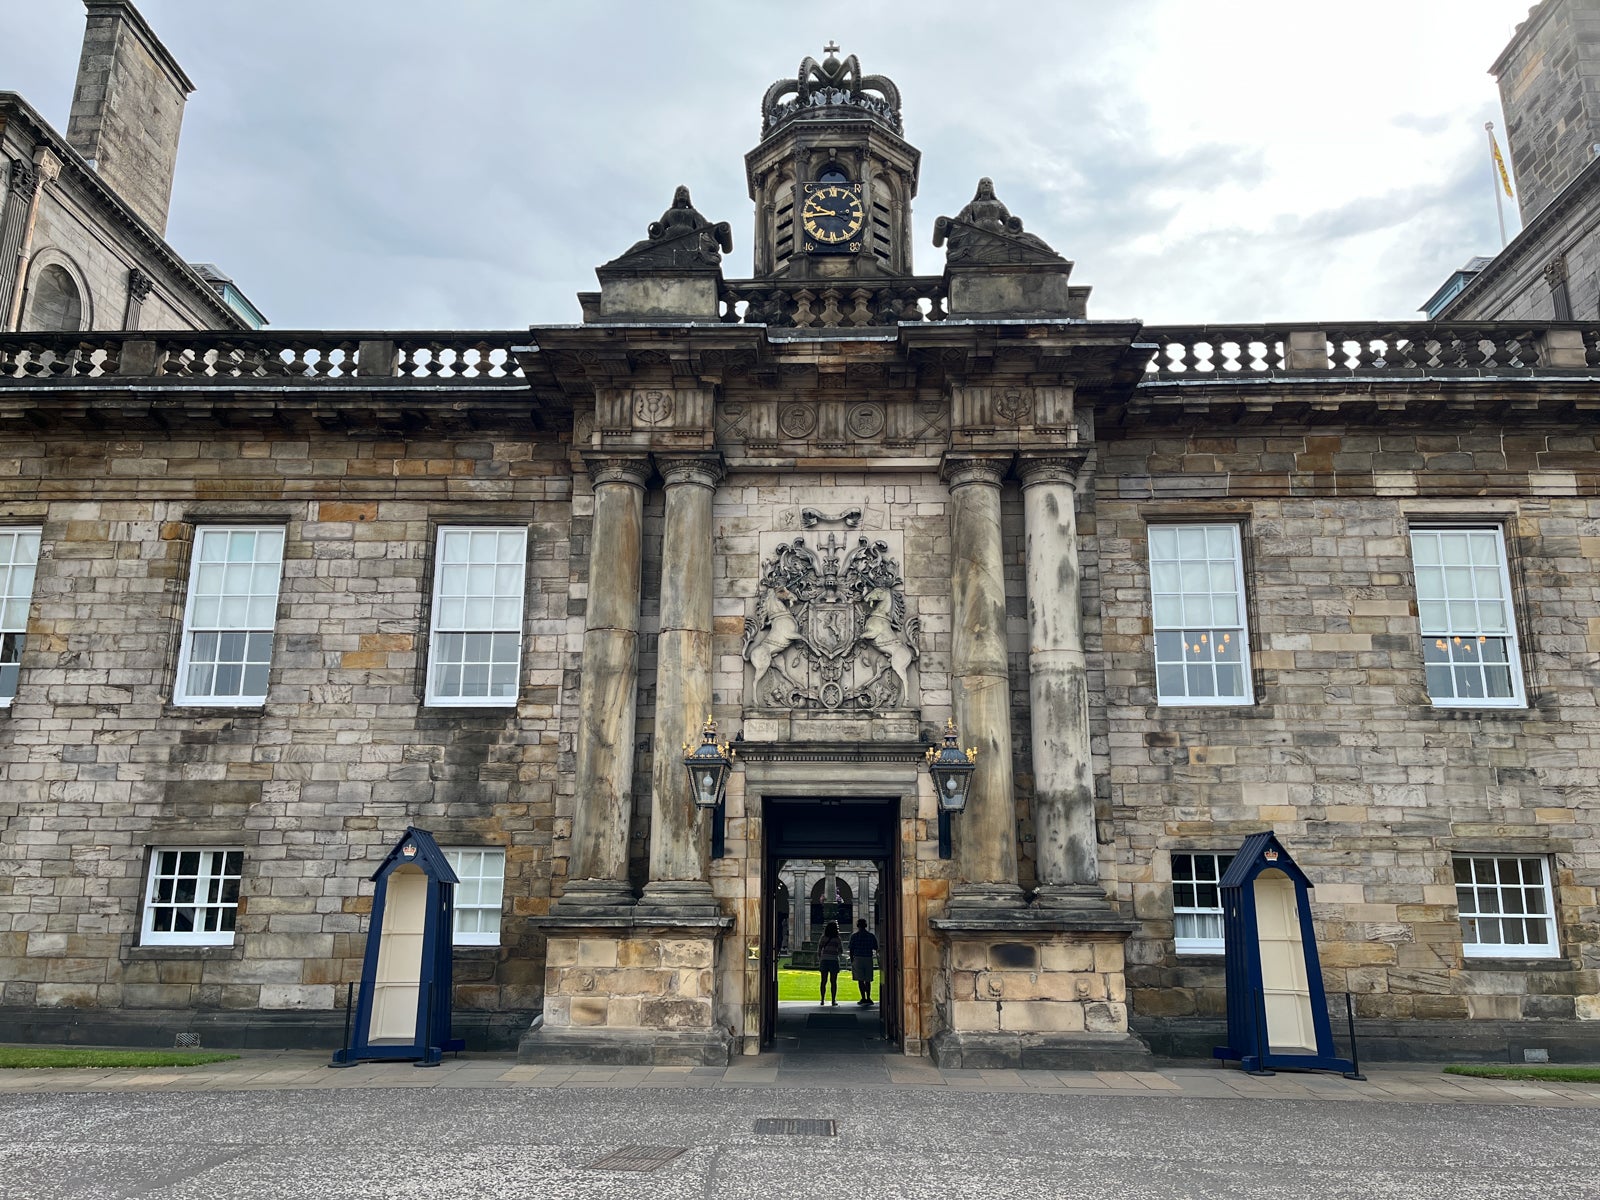 Palace of Holyroodhouse Edinburgh Scotland